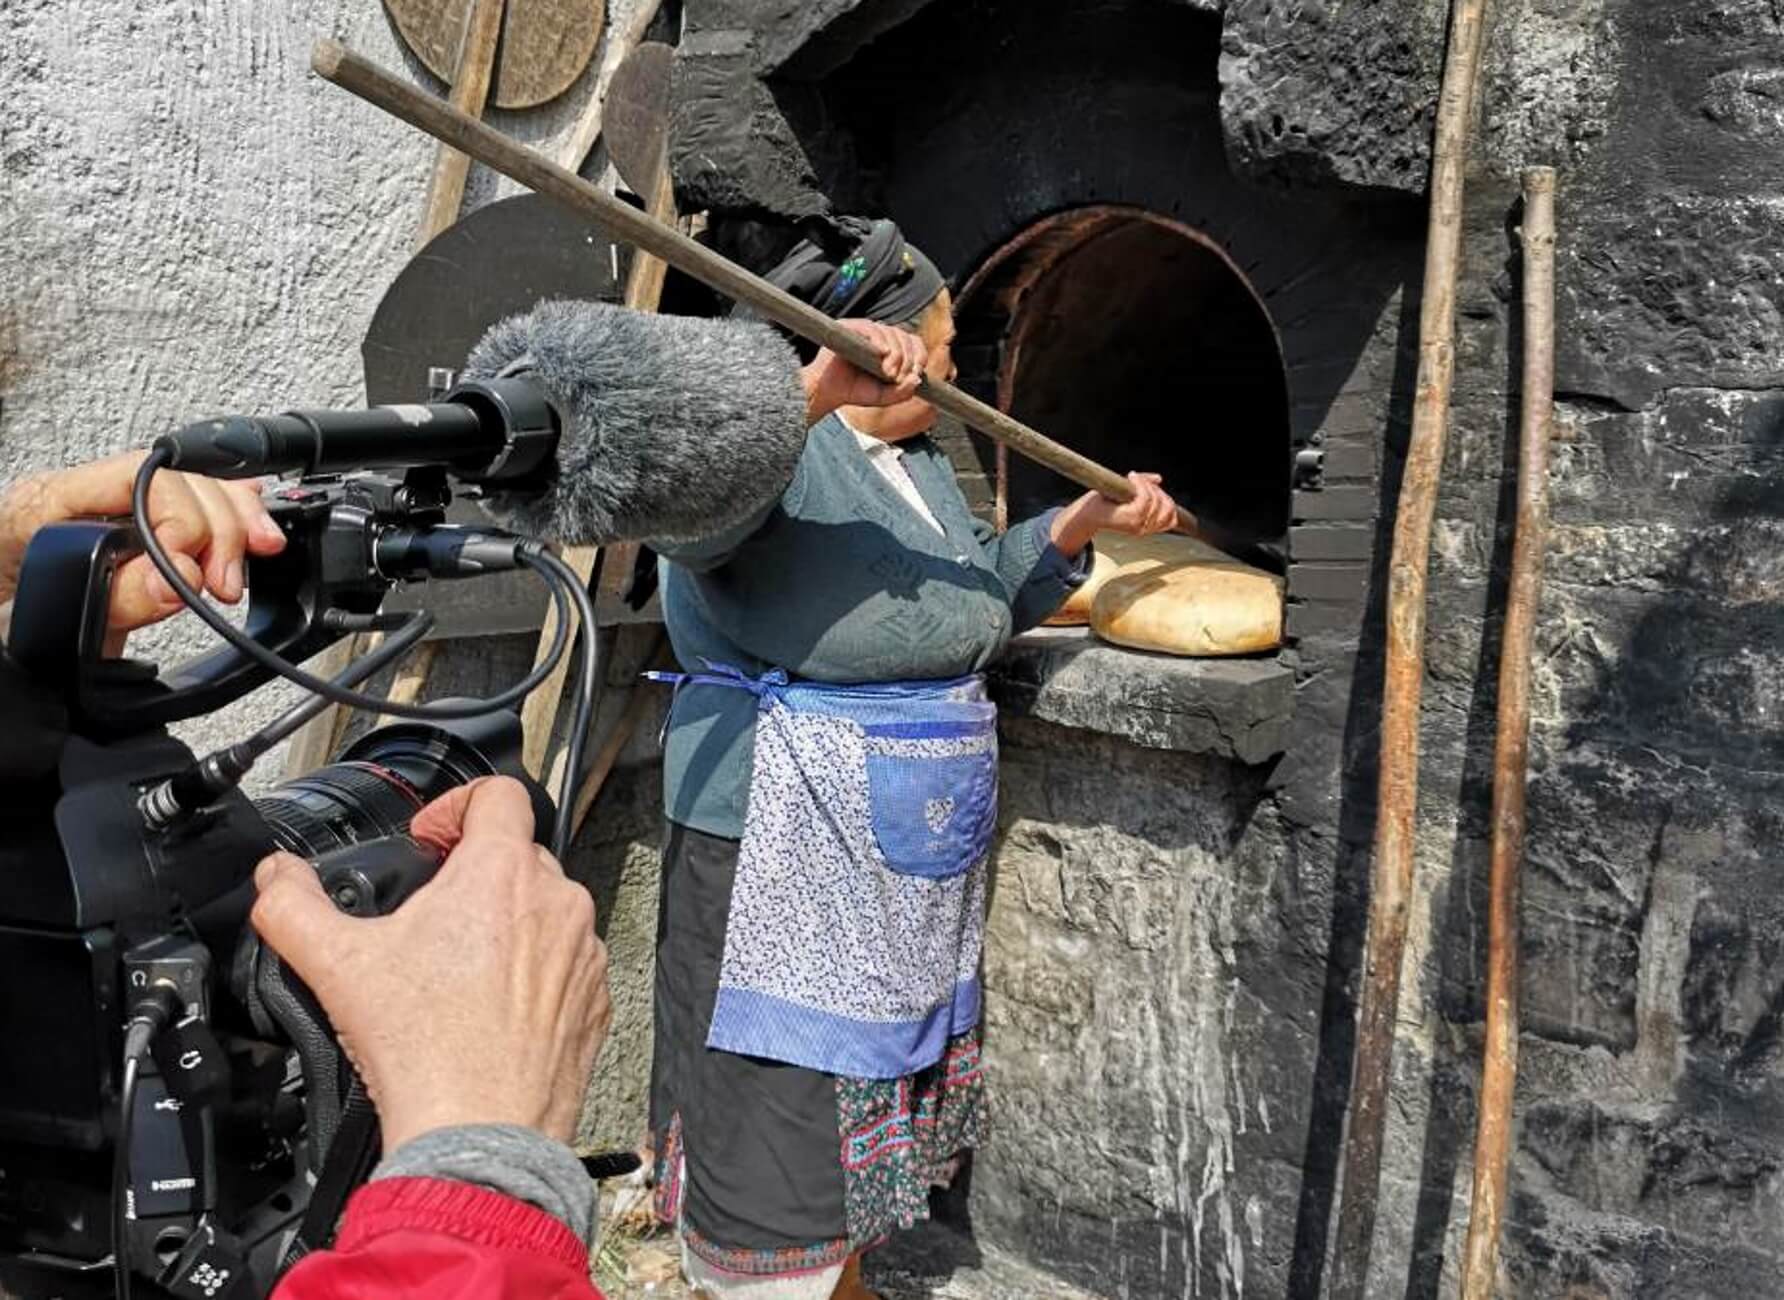 Κάρπαθος: Η παραδοσιακή γιαγιά, η διάσημη Ιταλίδα δημοσιογράφος και το μεγάλο στοίχημα [pics]